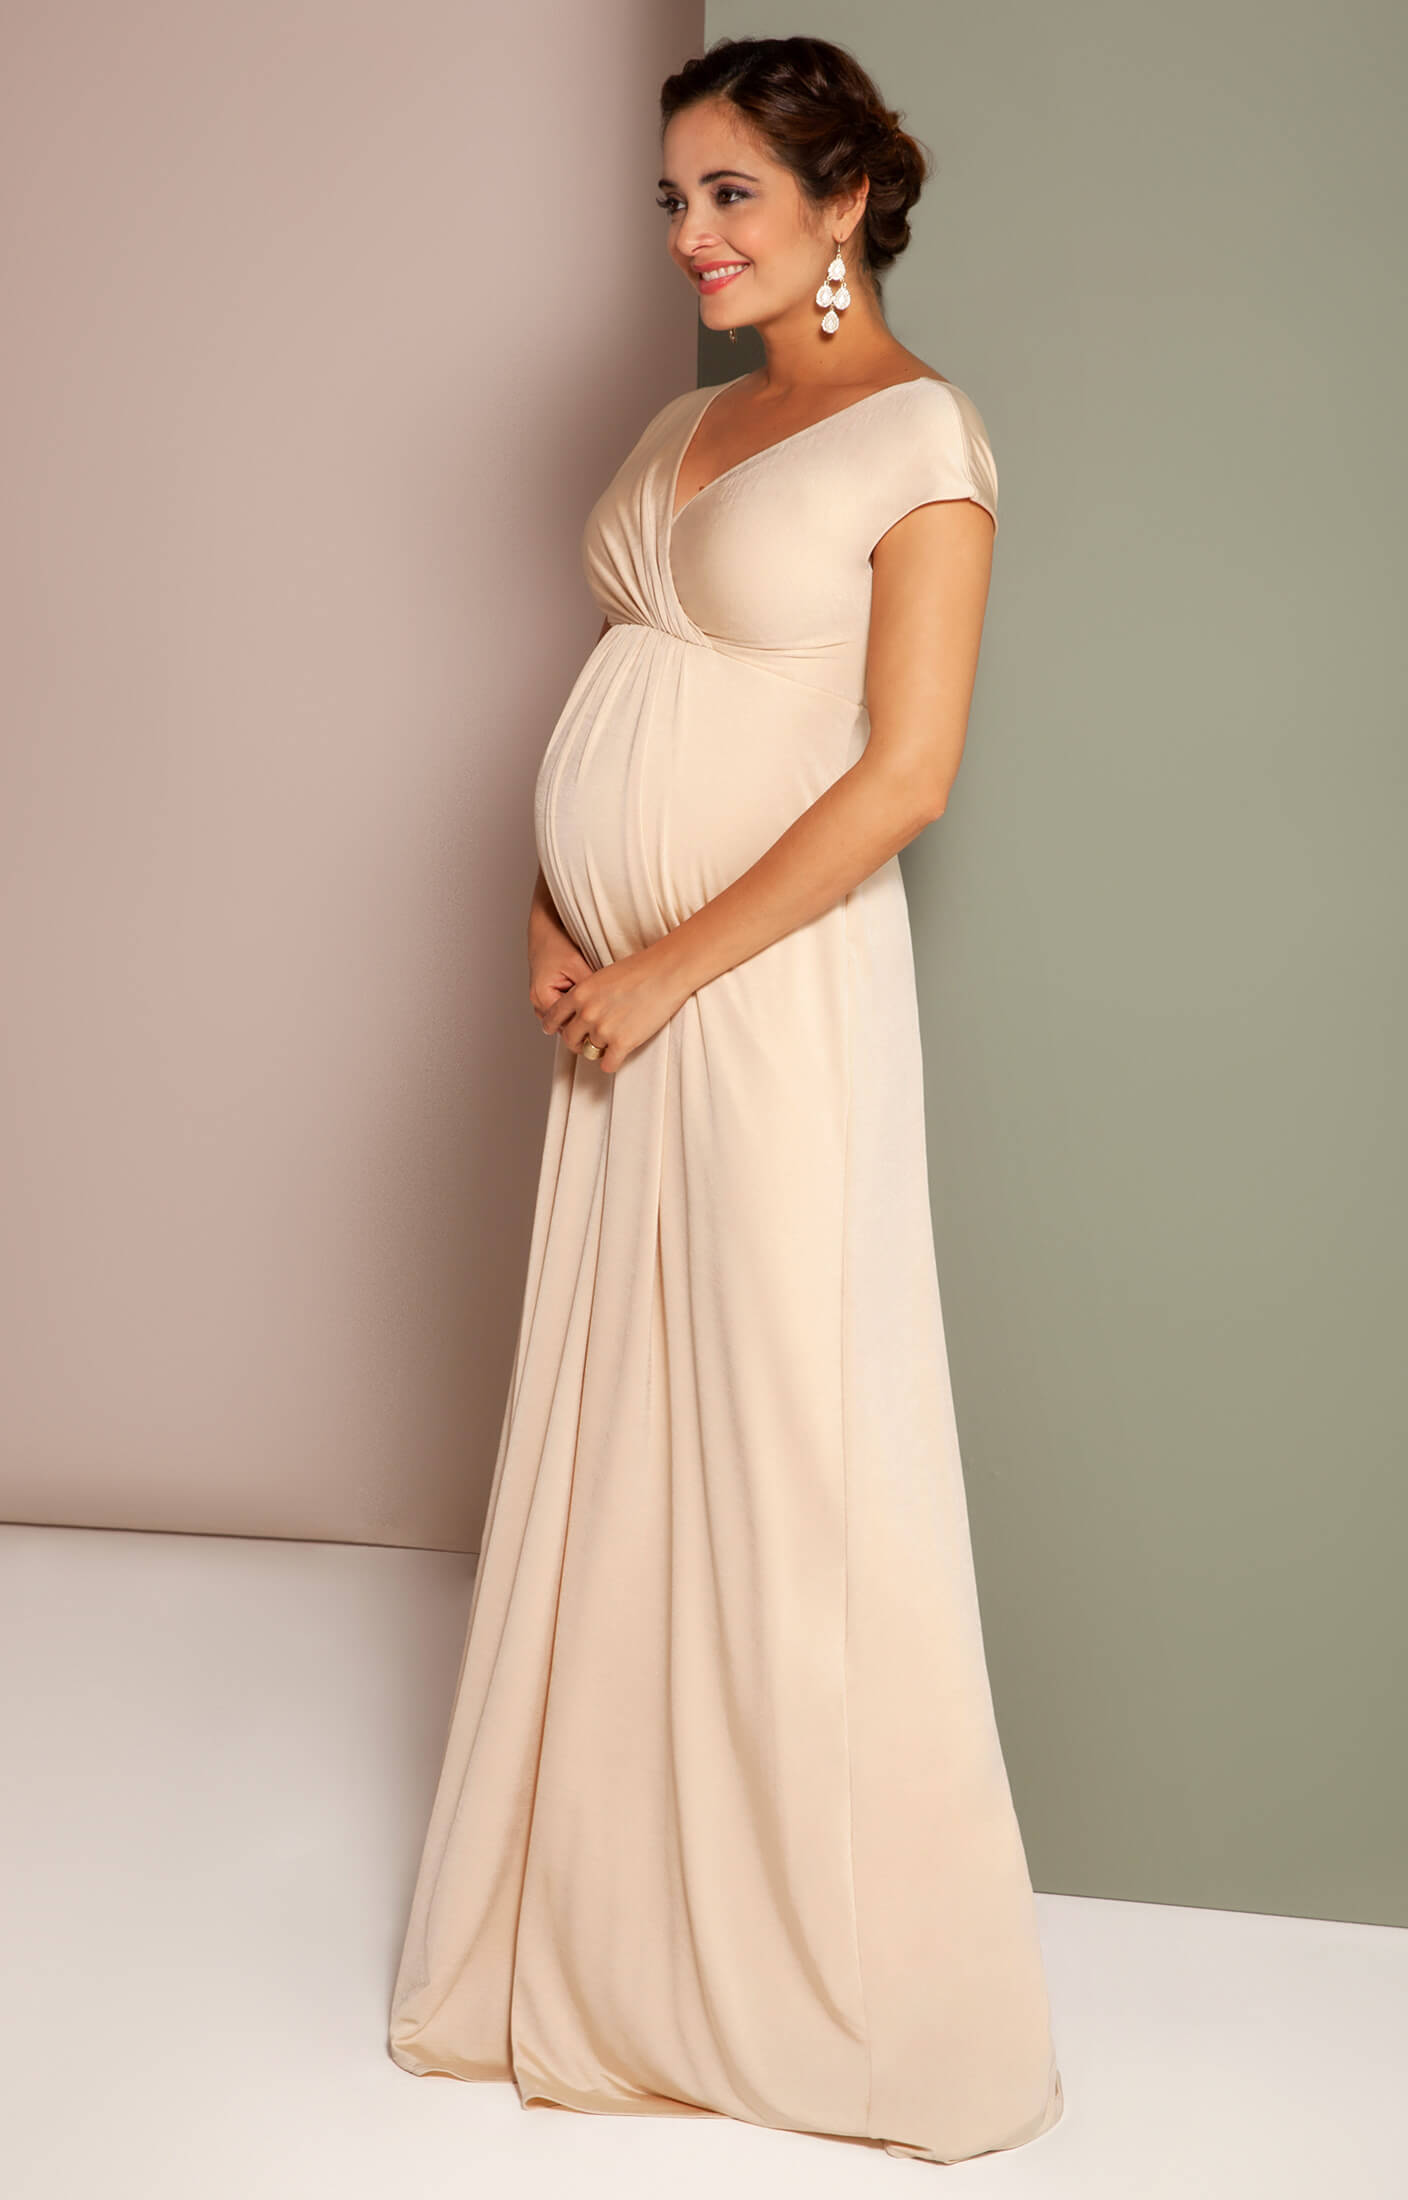 Maternity Evening Elegant party dress Maxi wedding NEW Size 8 10 12 14 16 UK 